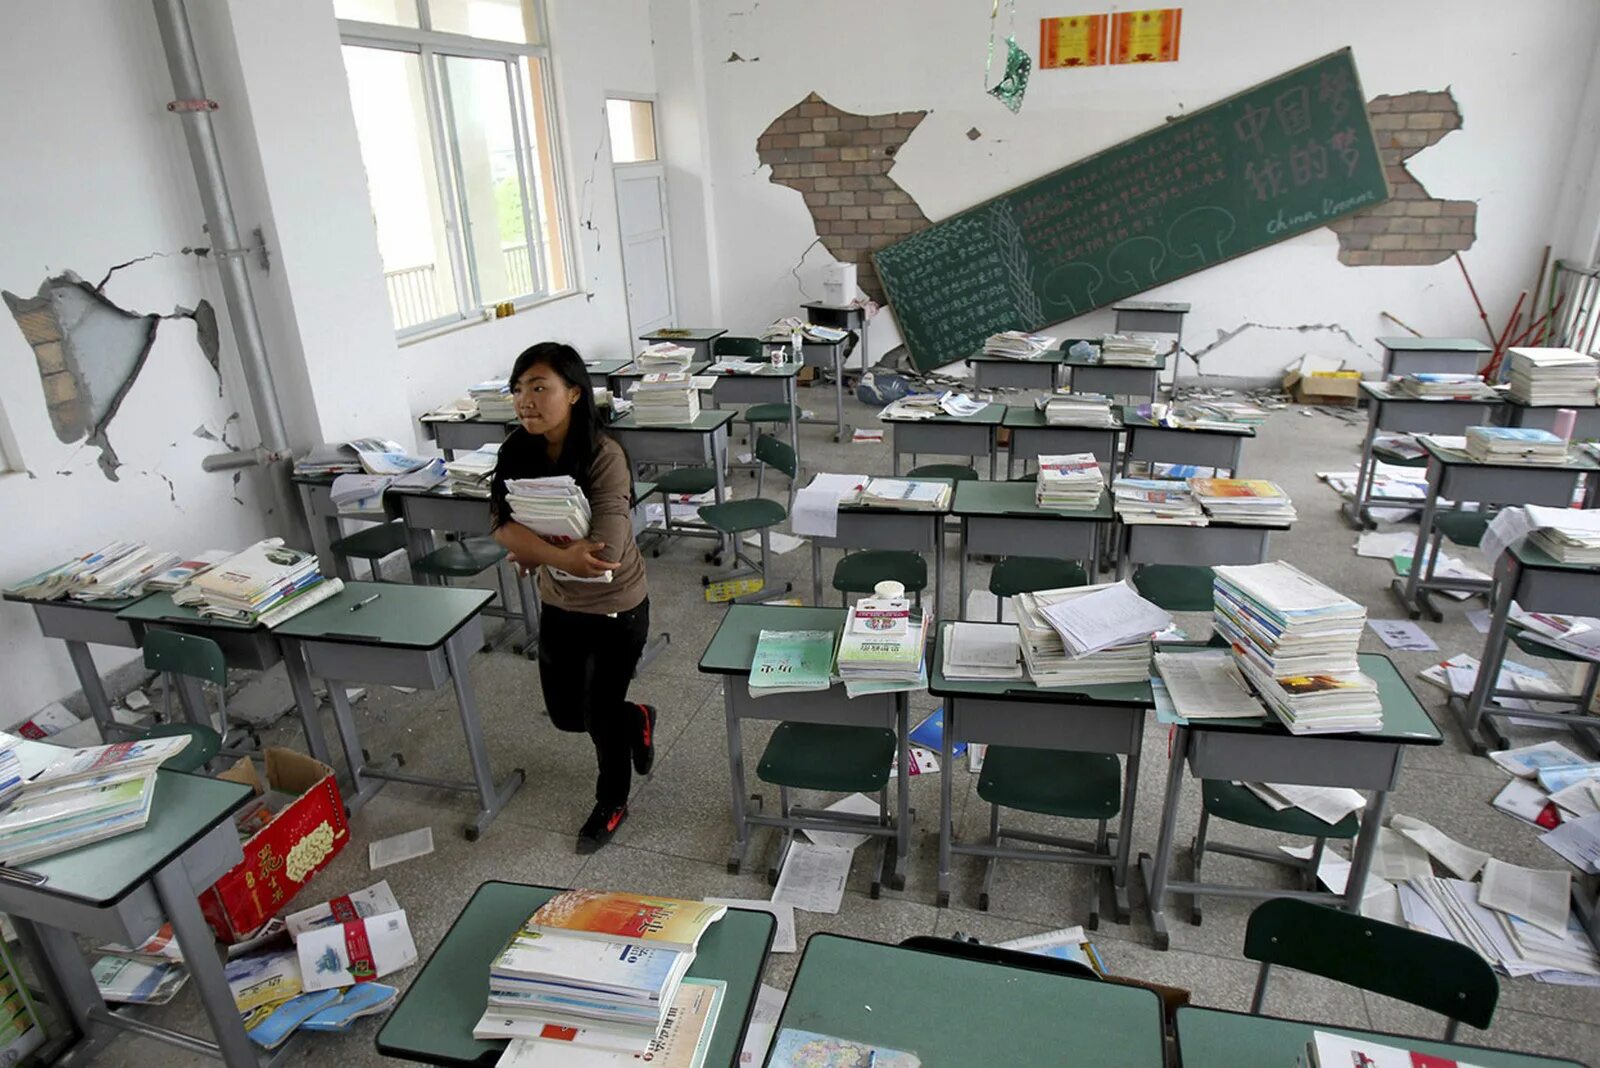 Школа землетрясение. Землетрясение в школе. Школа после землетрясений. Землетрясение внутри. Землетрясения в учебных заведениях.